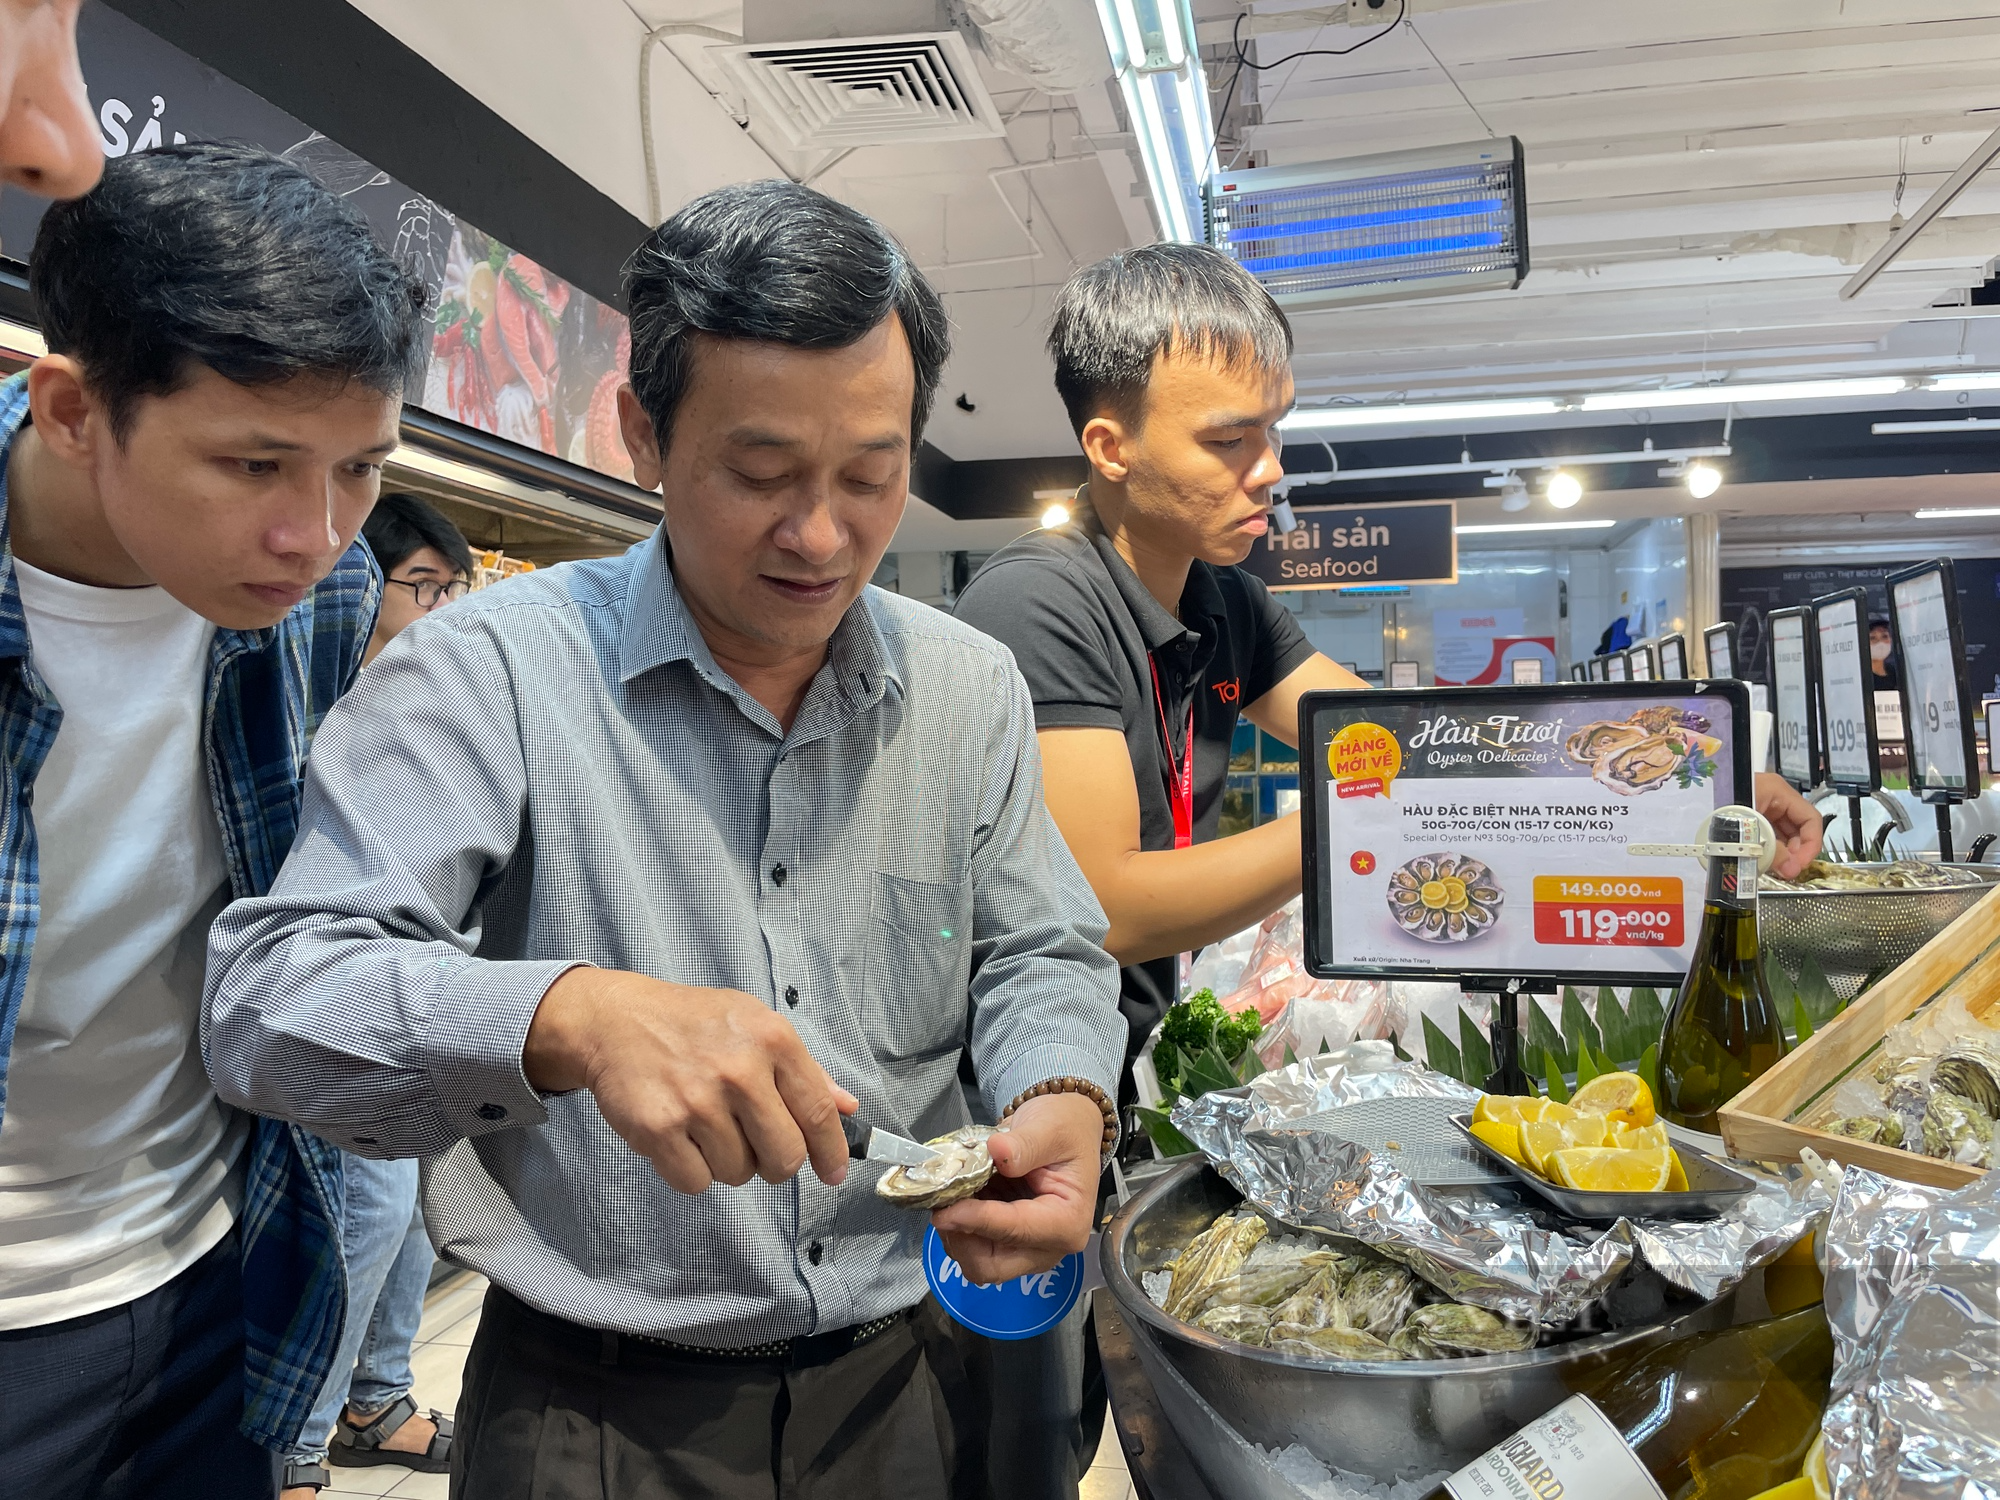 Hàu đặc sản Khánh Hòa chuẩn sashimi hiếm hoi xuất hiện tại siêu thị TP.HCM với giá sốc - Ảnh 4.